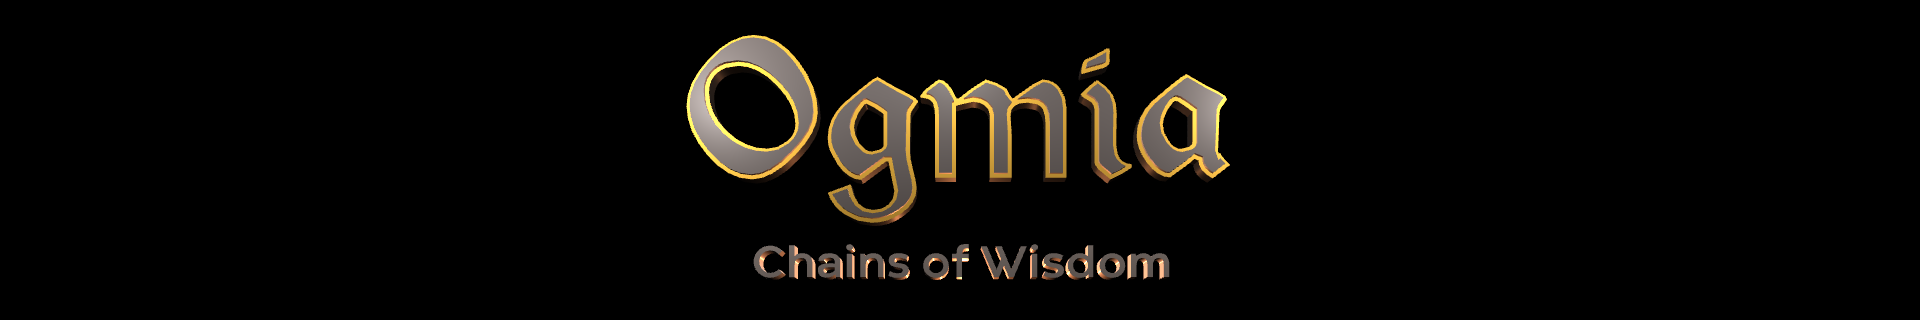 Ogmia: Chains of Wisdom